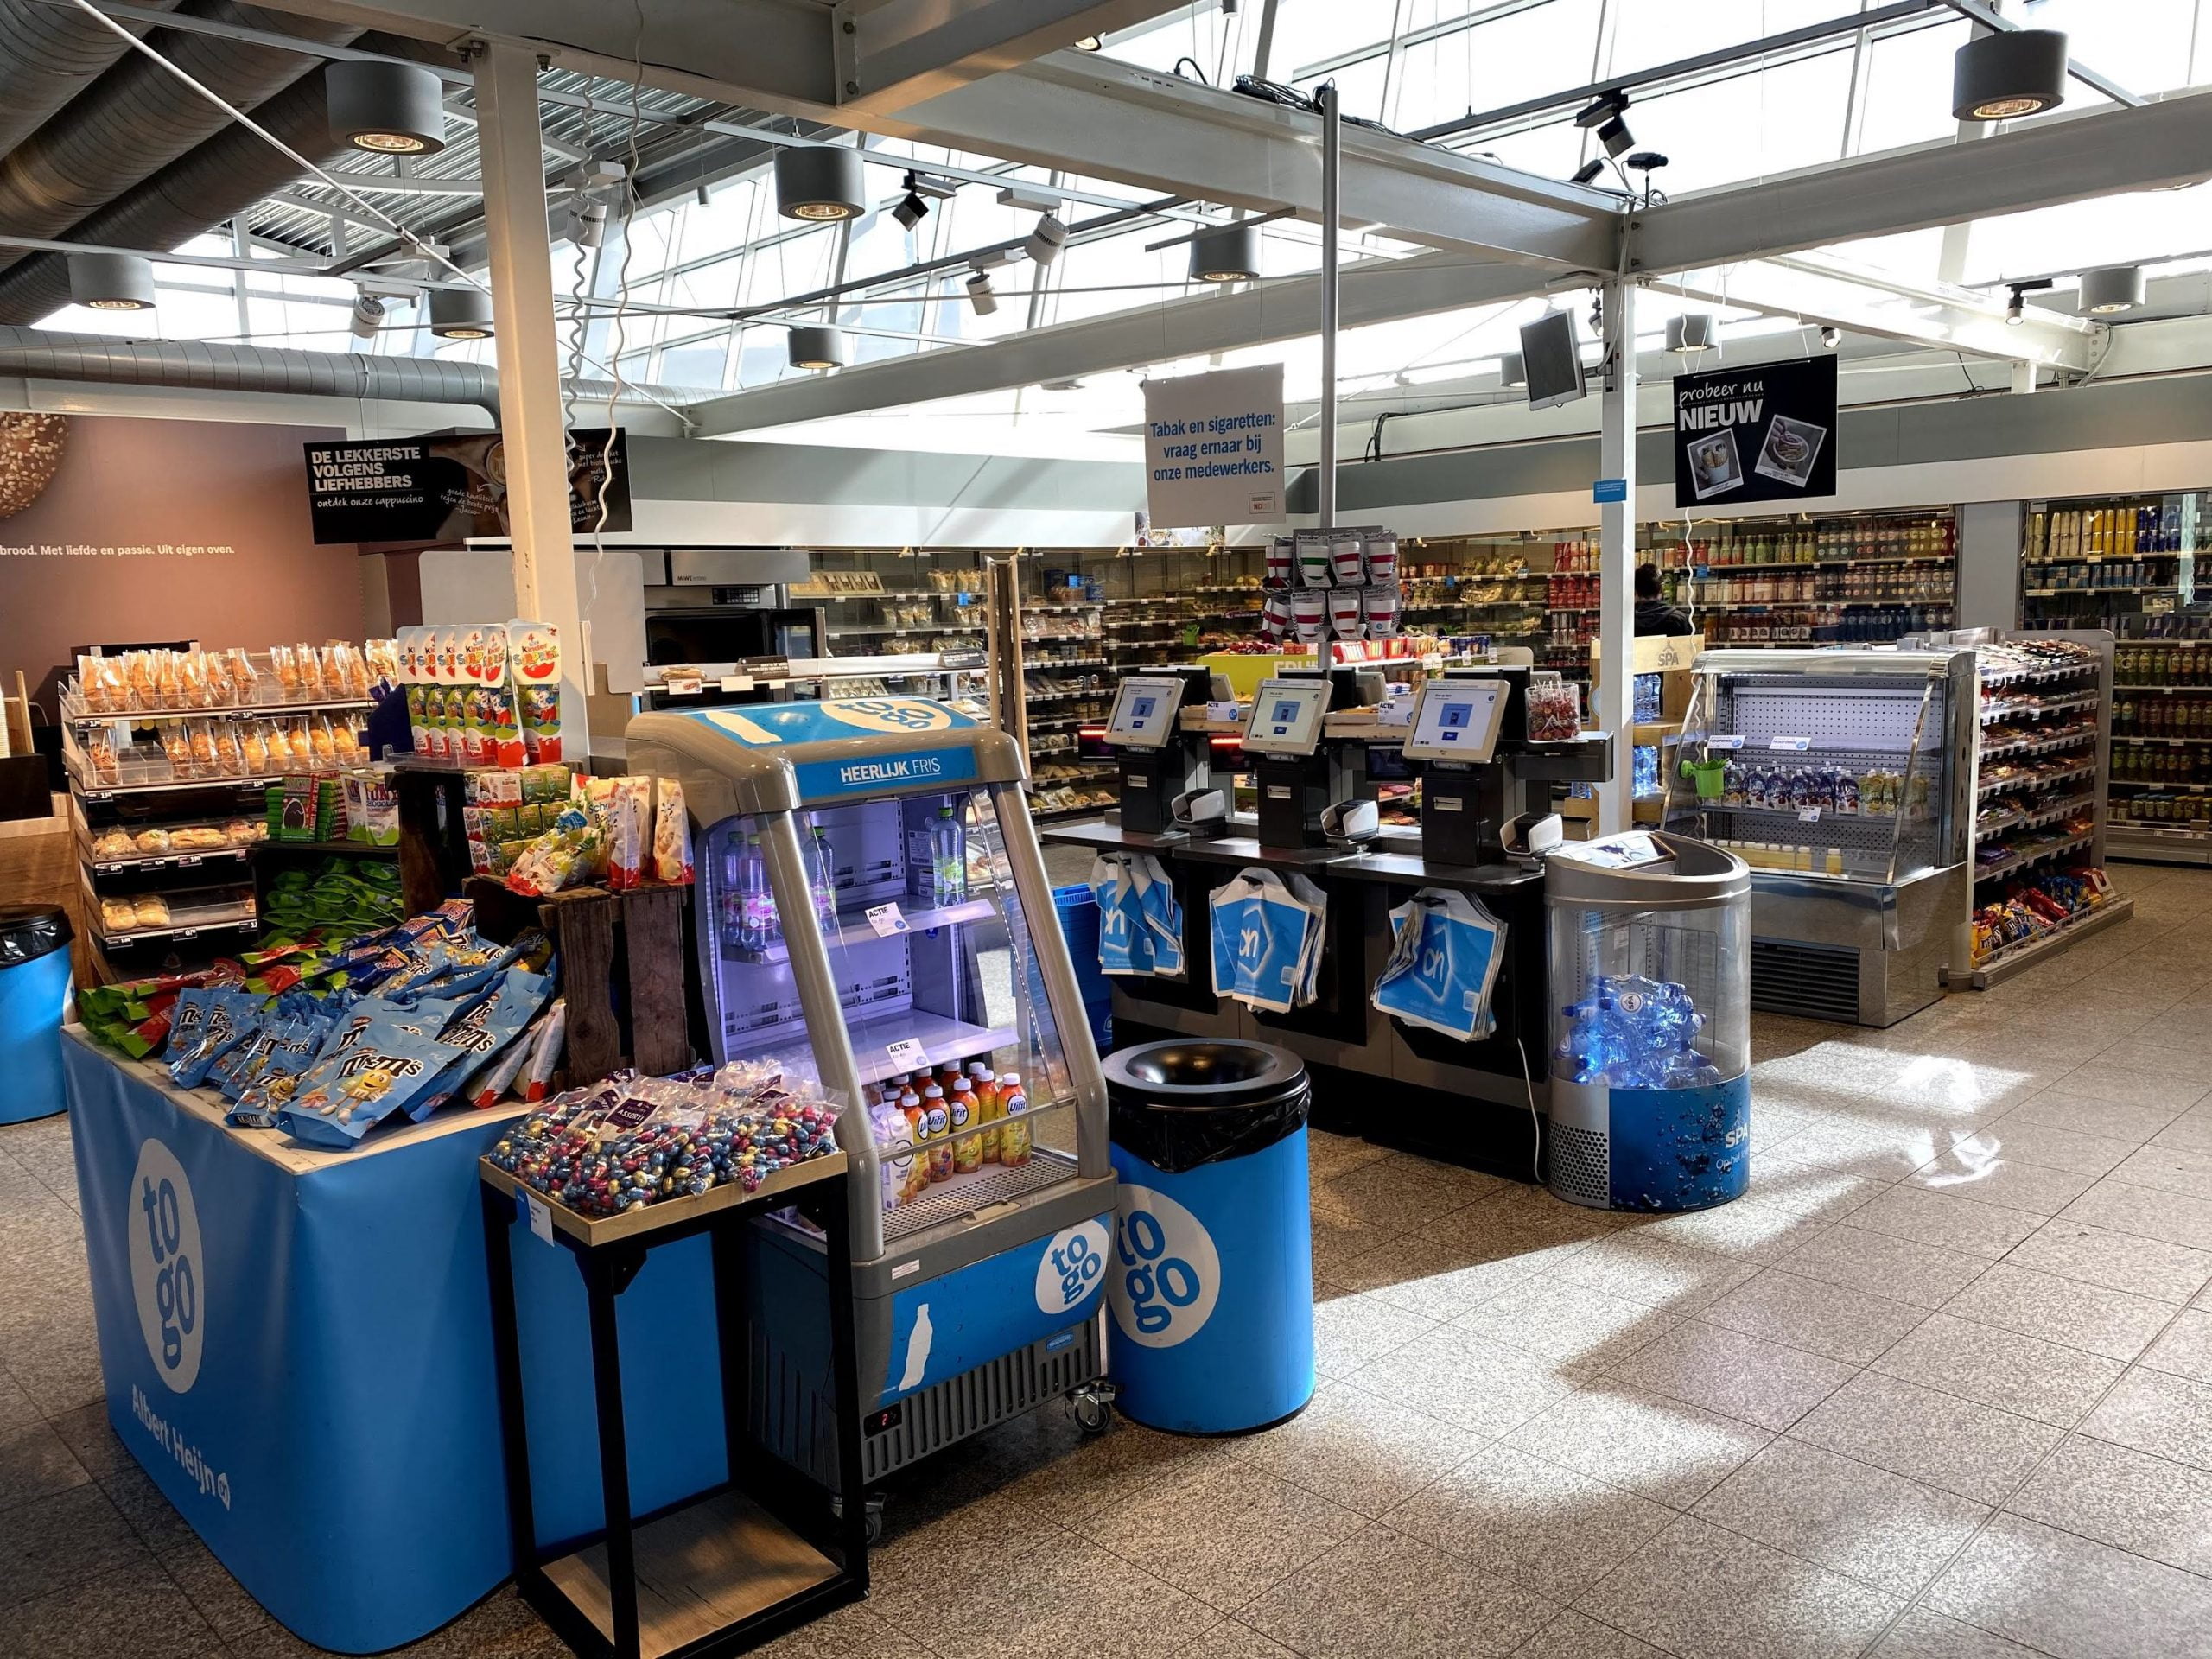 Sogar der Supermarkt am Flughafen Eindhoven ist verlassen …